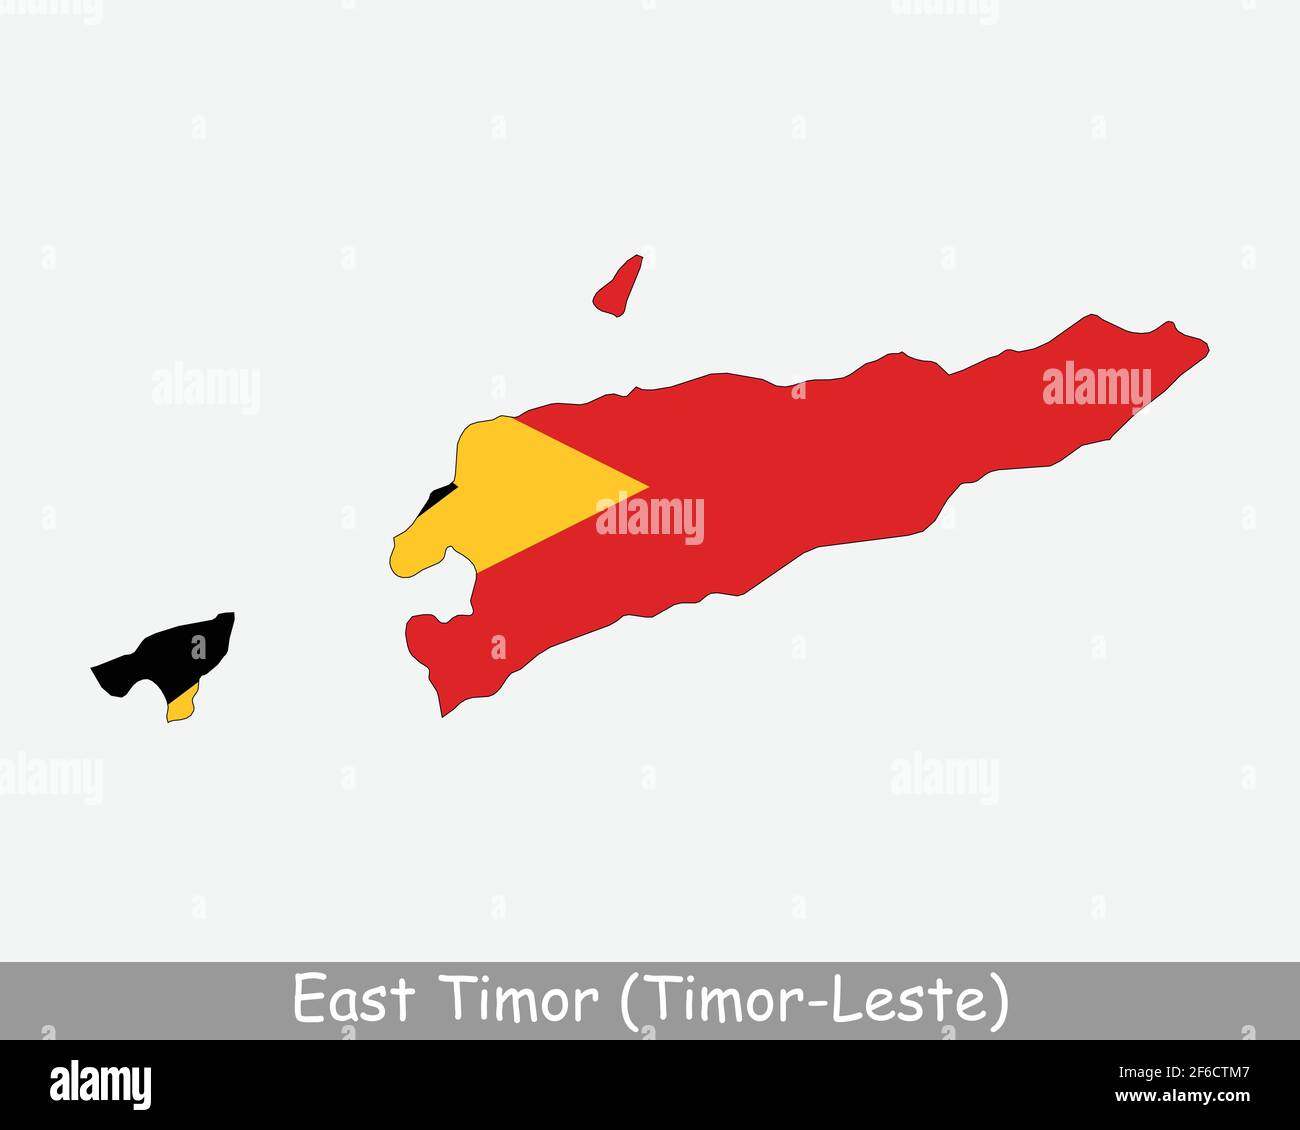 Drapeau de carte du Timor oriental. Carte du Timor-Leste avec le drapeau national est-timorais isolé sur fond blanc. Illustration vectorielle. Illustration de Vecteur